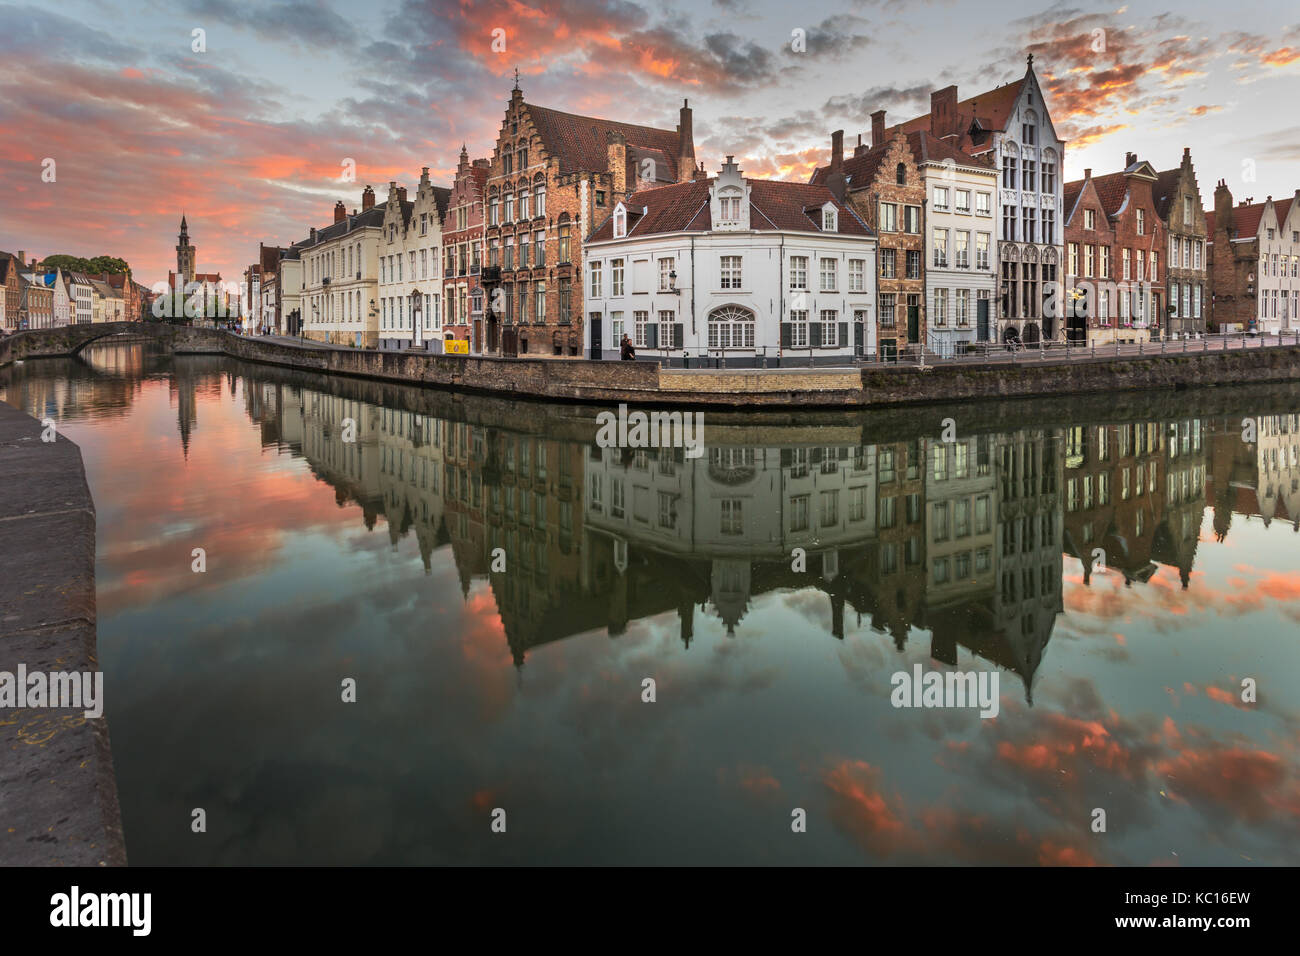 Belgique, Bruges, bâtiments, coucher de soleil au bord du canal Banque D'Images